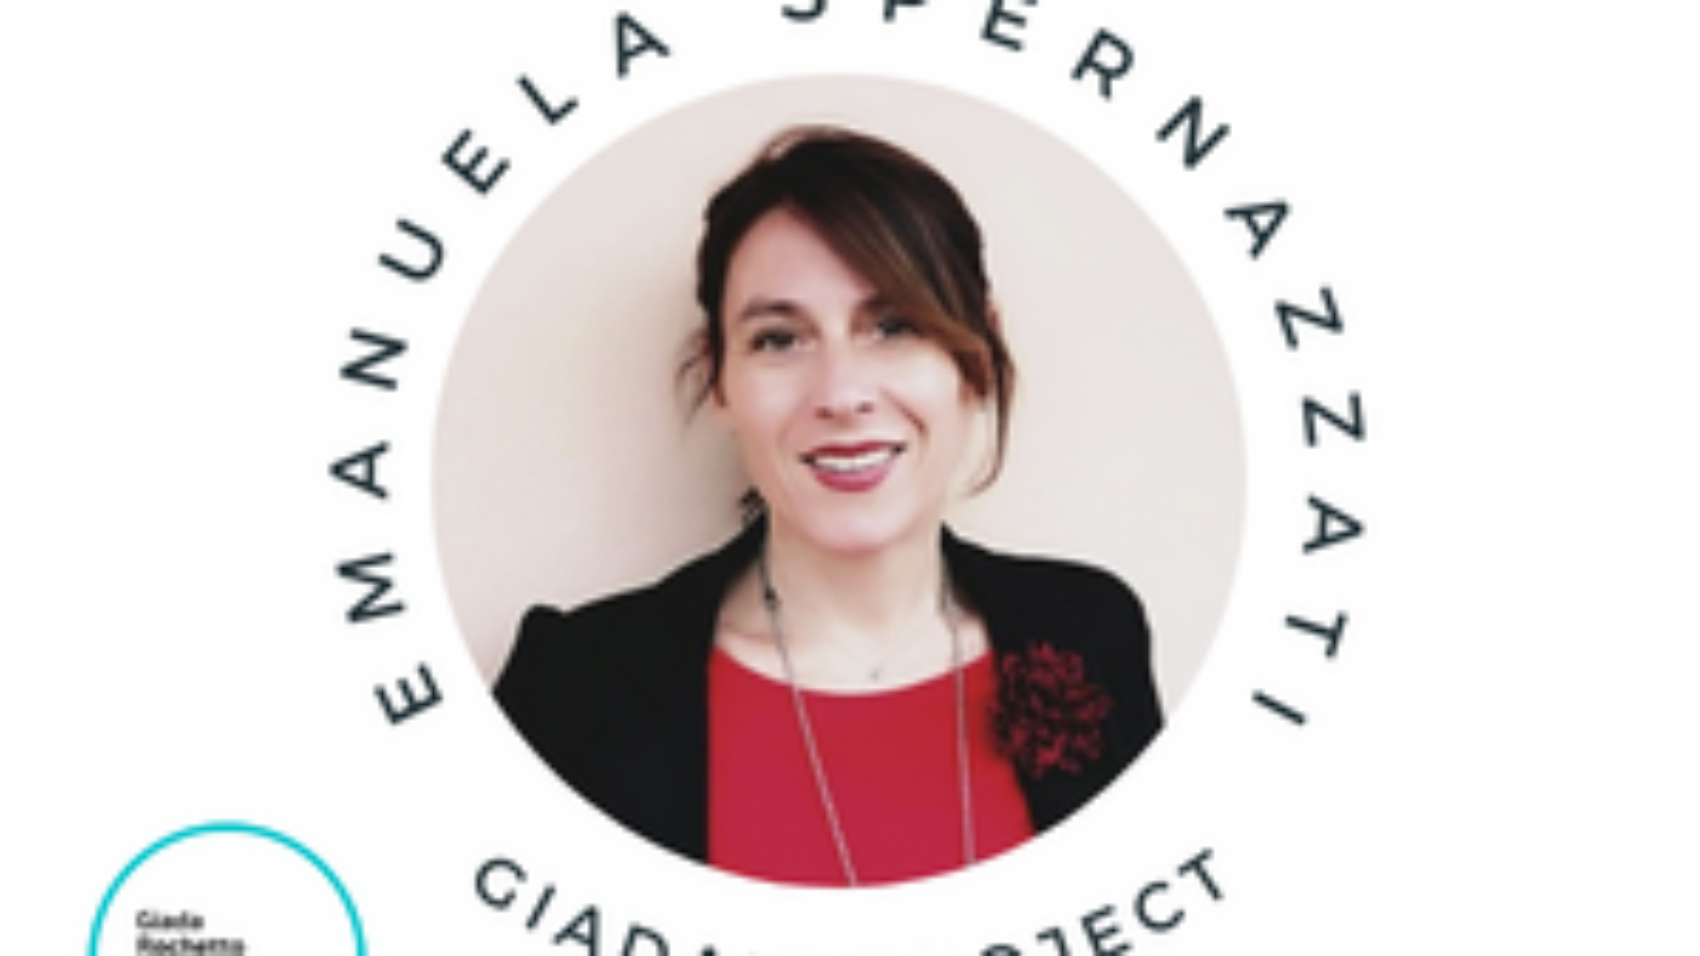 Emanuela Spernazzati, Consulente di Carriera & Responsabile HR ed Executive Career Coach